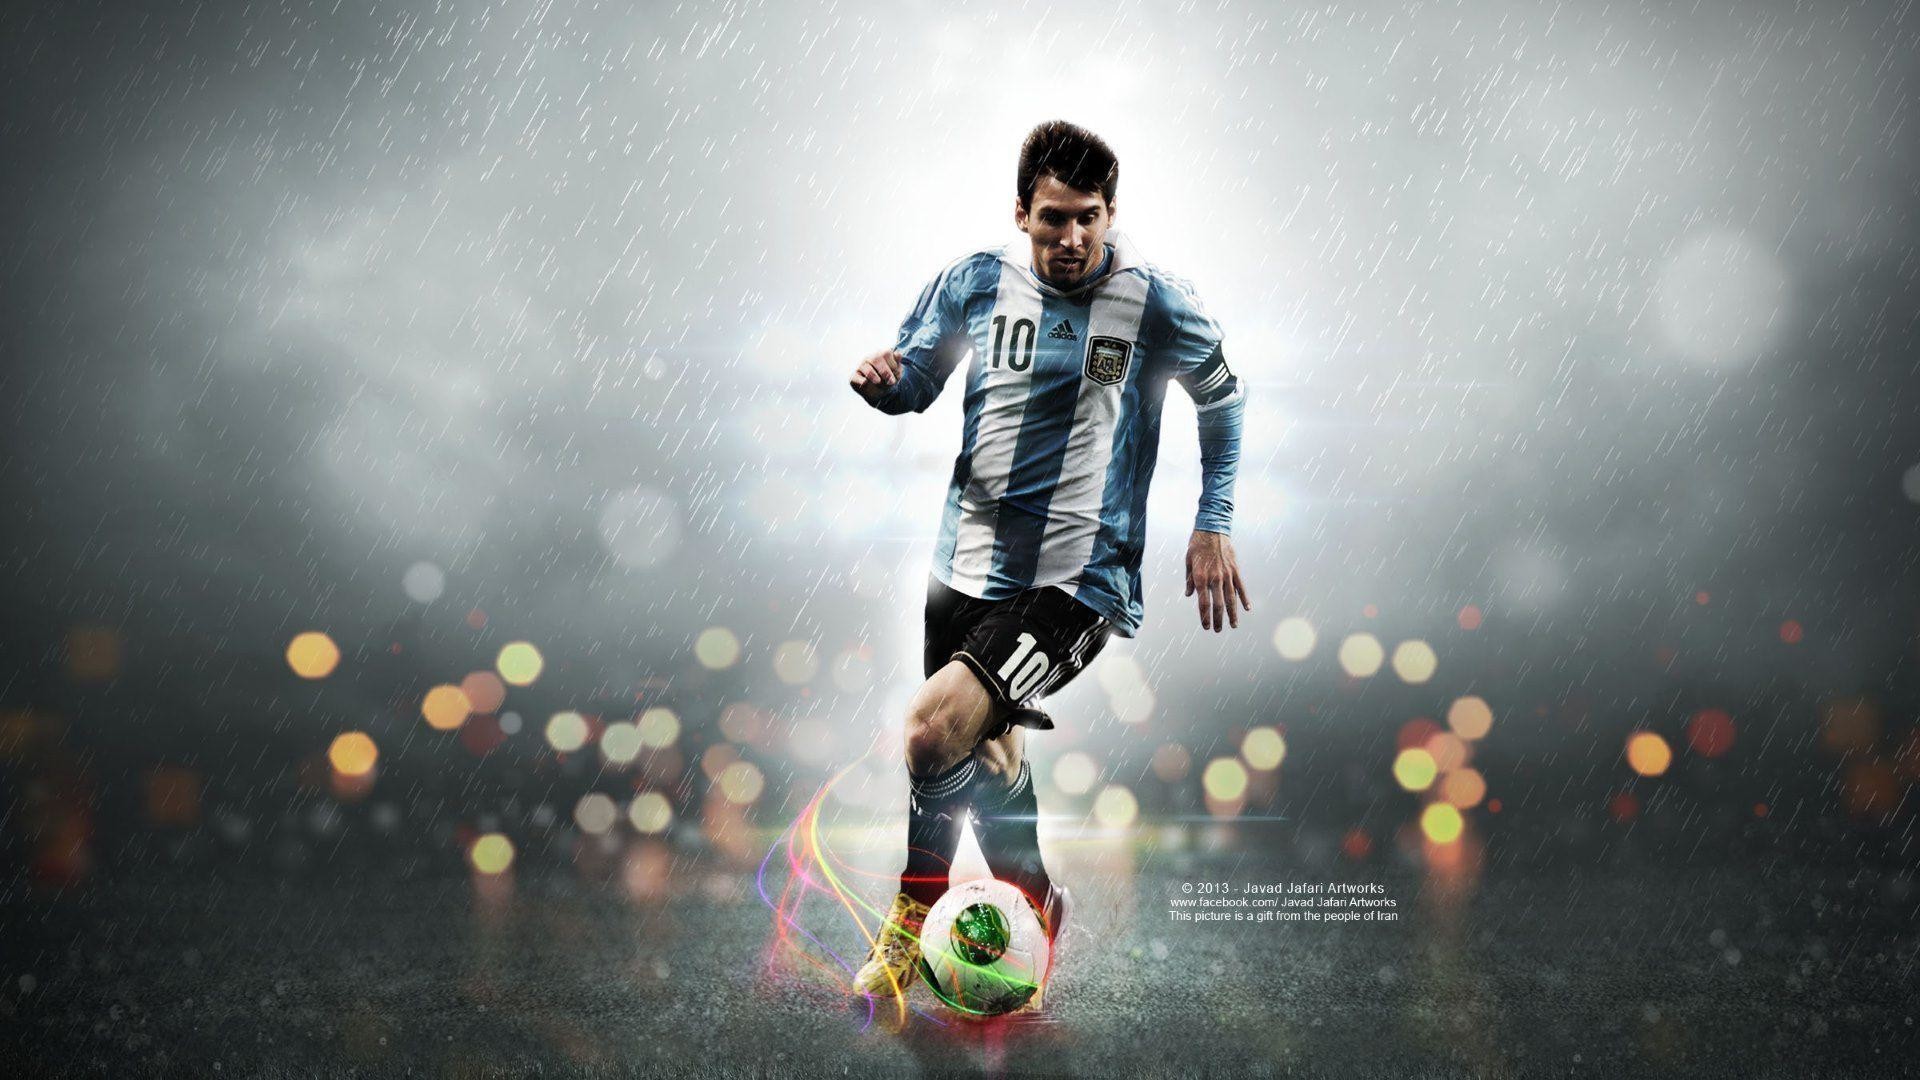 Lionel Messi: Với tài năng và kỹ năng điêu luyện của mình, Lionel Messi là một trong những cầu thủ xuất sắc nhất thế giới. Hãy cùng ngắm nhìn những pha bóng tinh tế của anh ta và đắm chìm trong thế giới của môn thể thao vua.